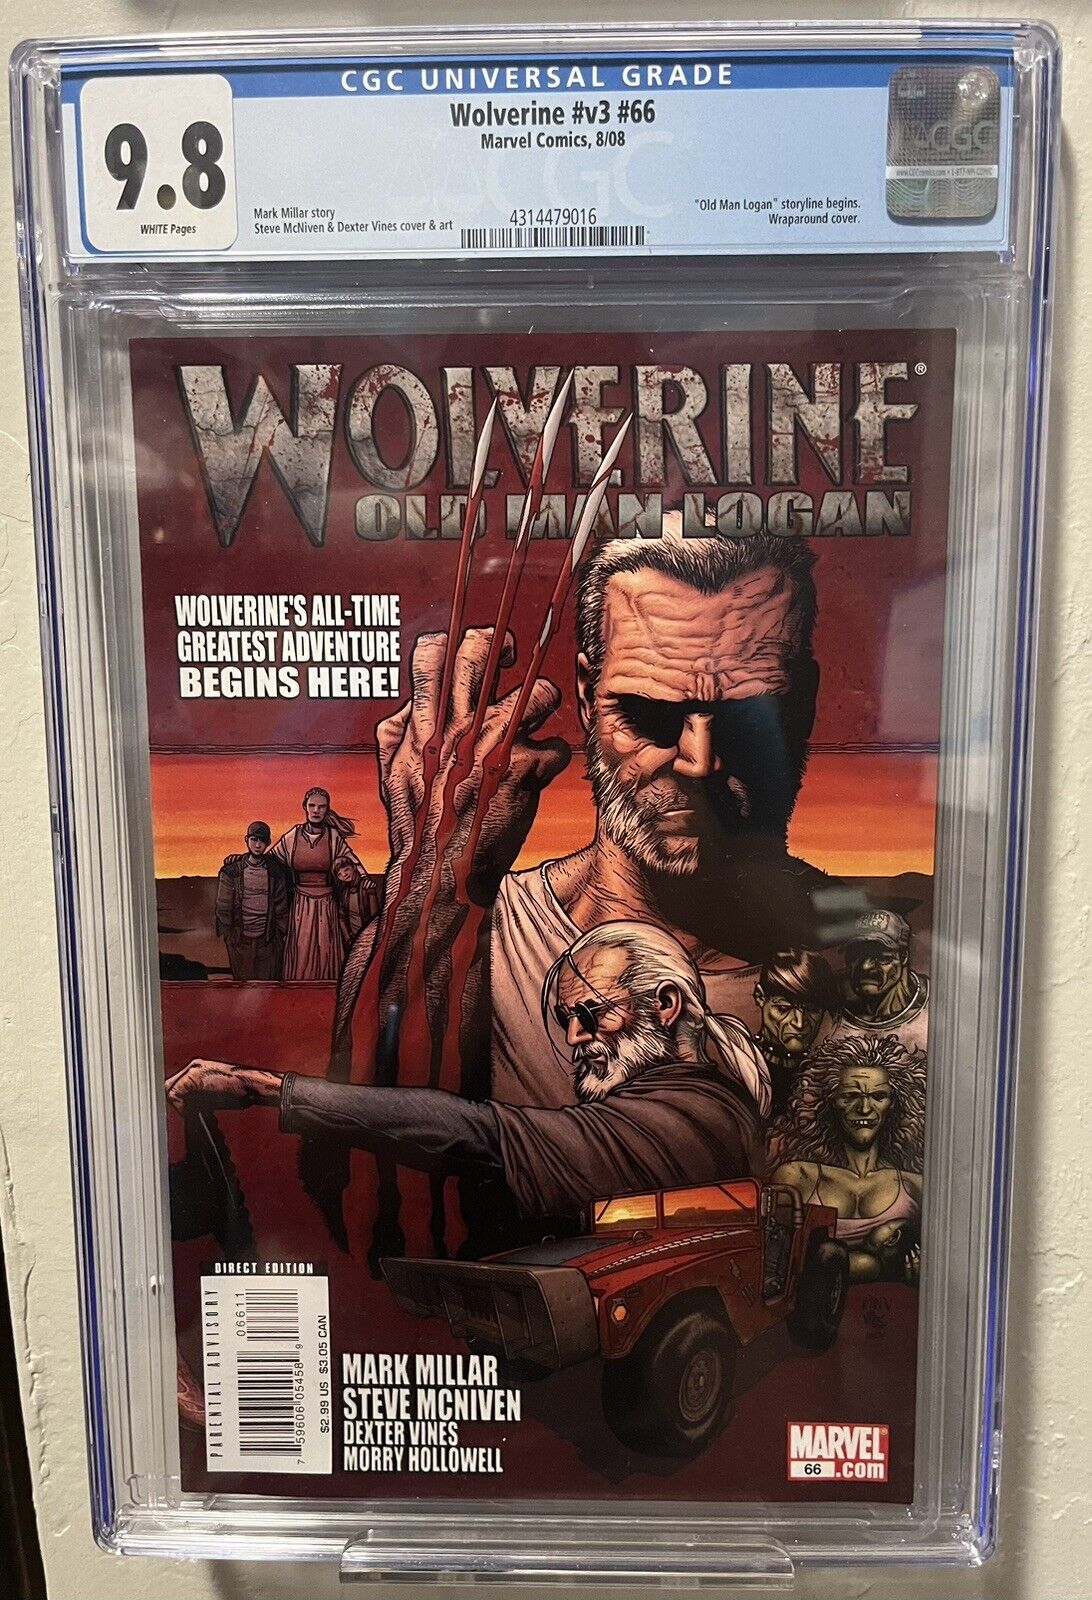 Wolverine Volume 3 #66 CGC 9.8 - Old Man Logan Storyline Begins *Key Issue, NM/M